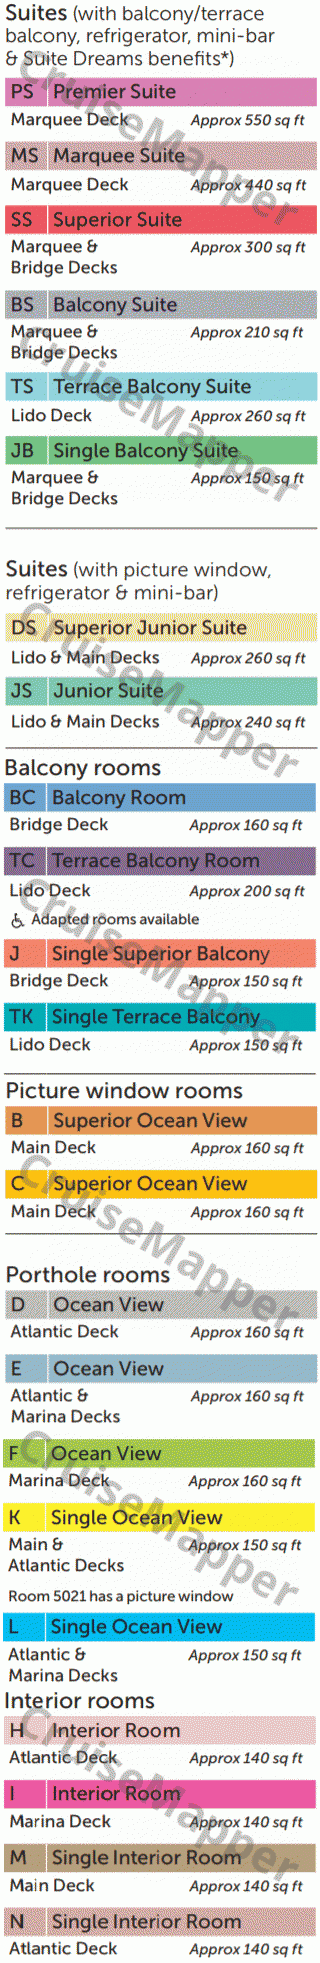 Black Watch deck 9 plan (Marquee-Suites-Pool) legend